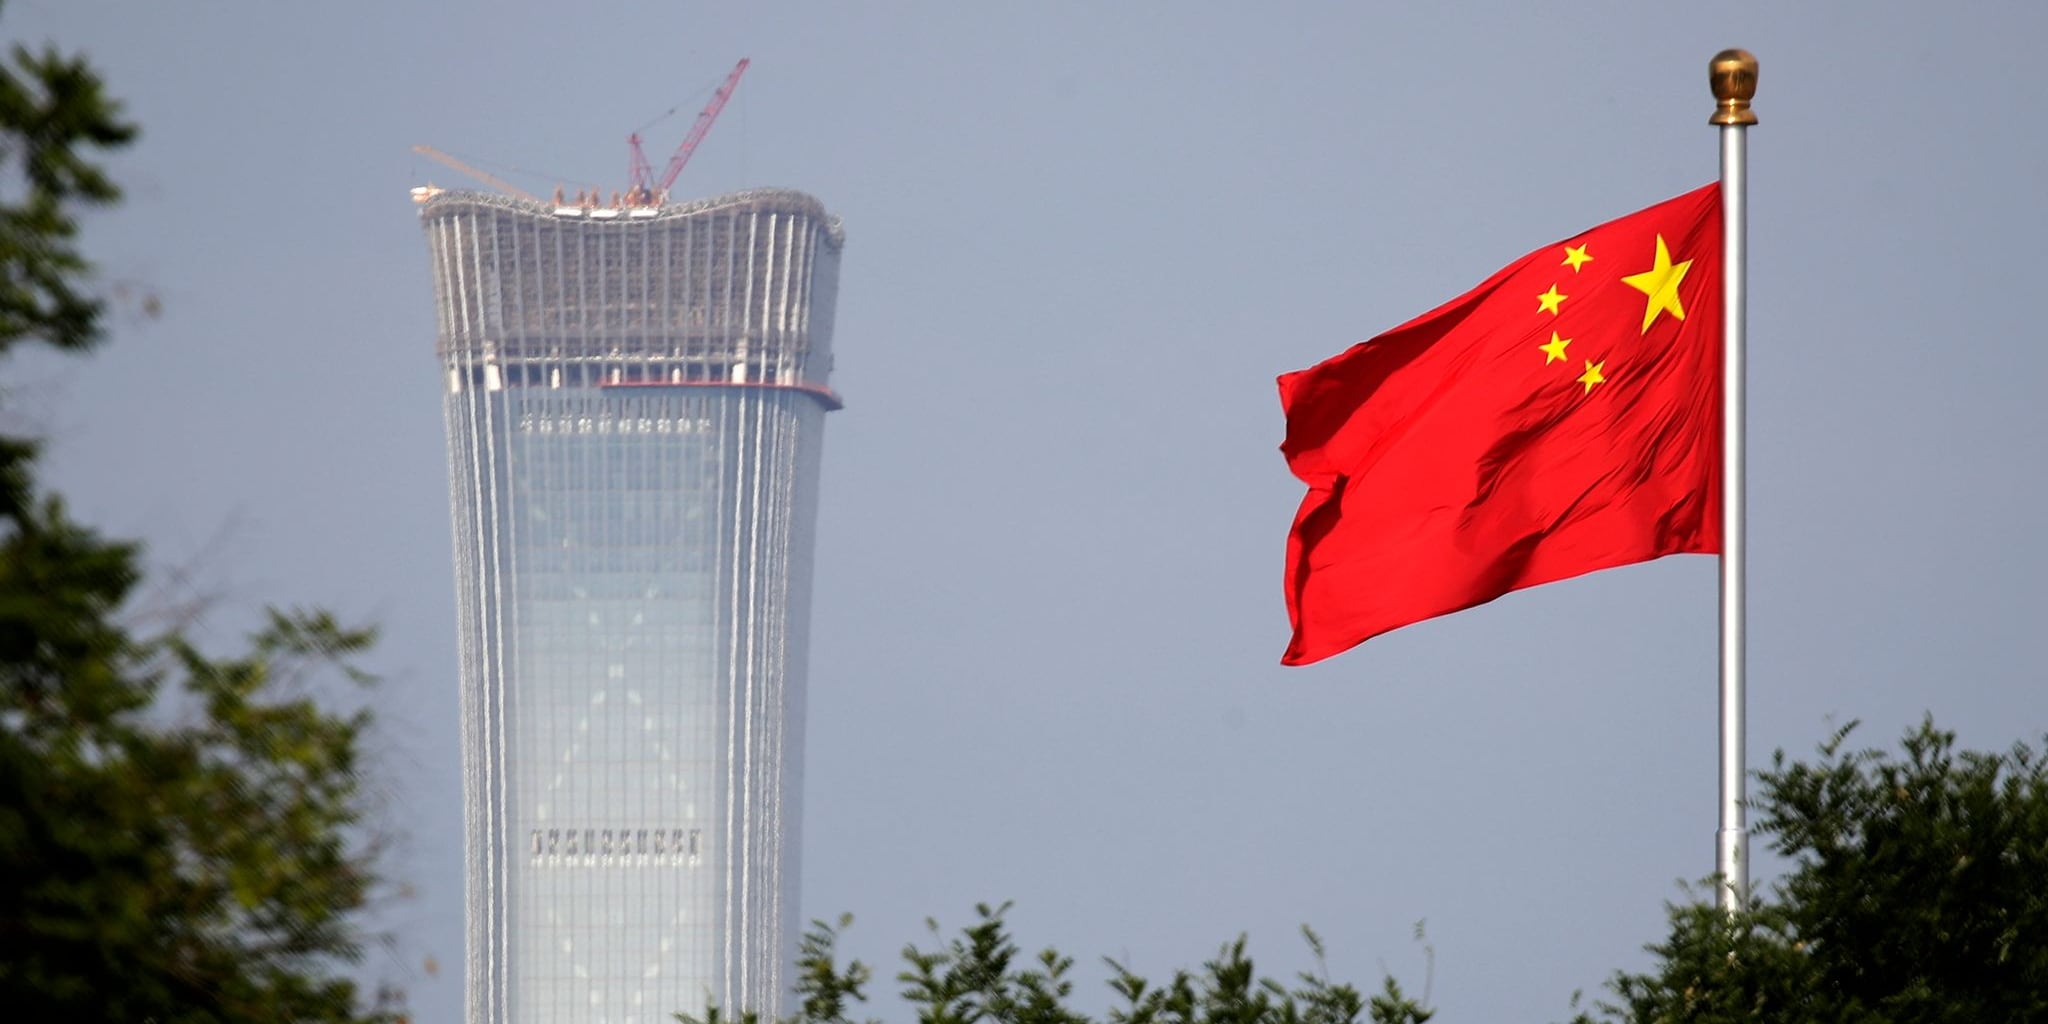 plus 5,3 prozent - chinas wirtschaft wächst stärker als erwartet, aber experten zweifeln an daten